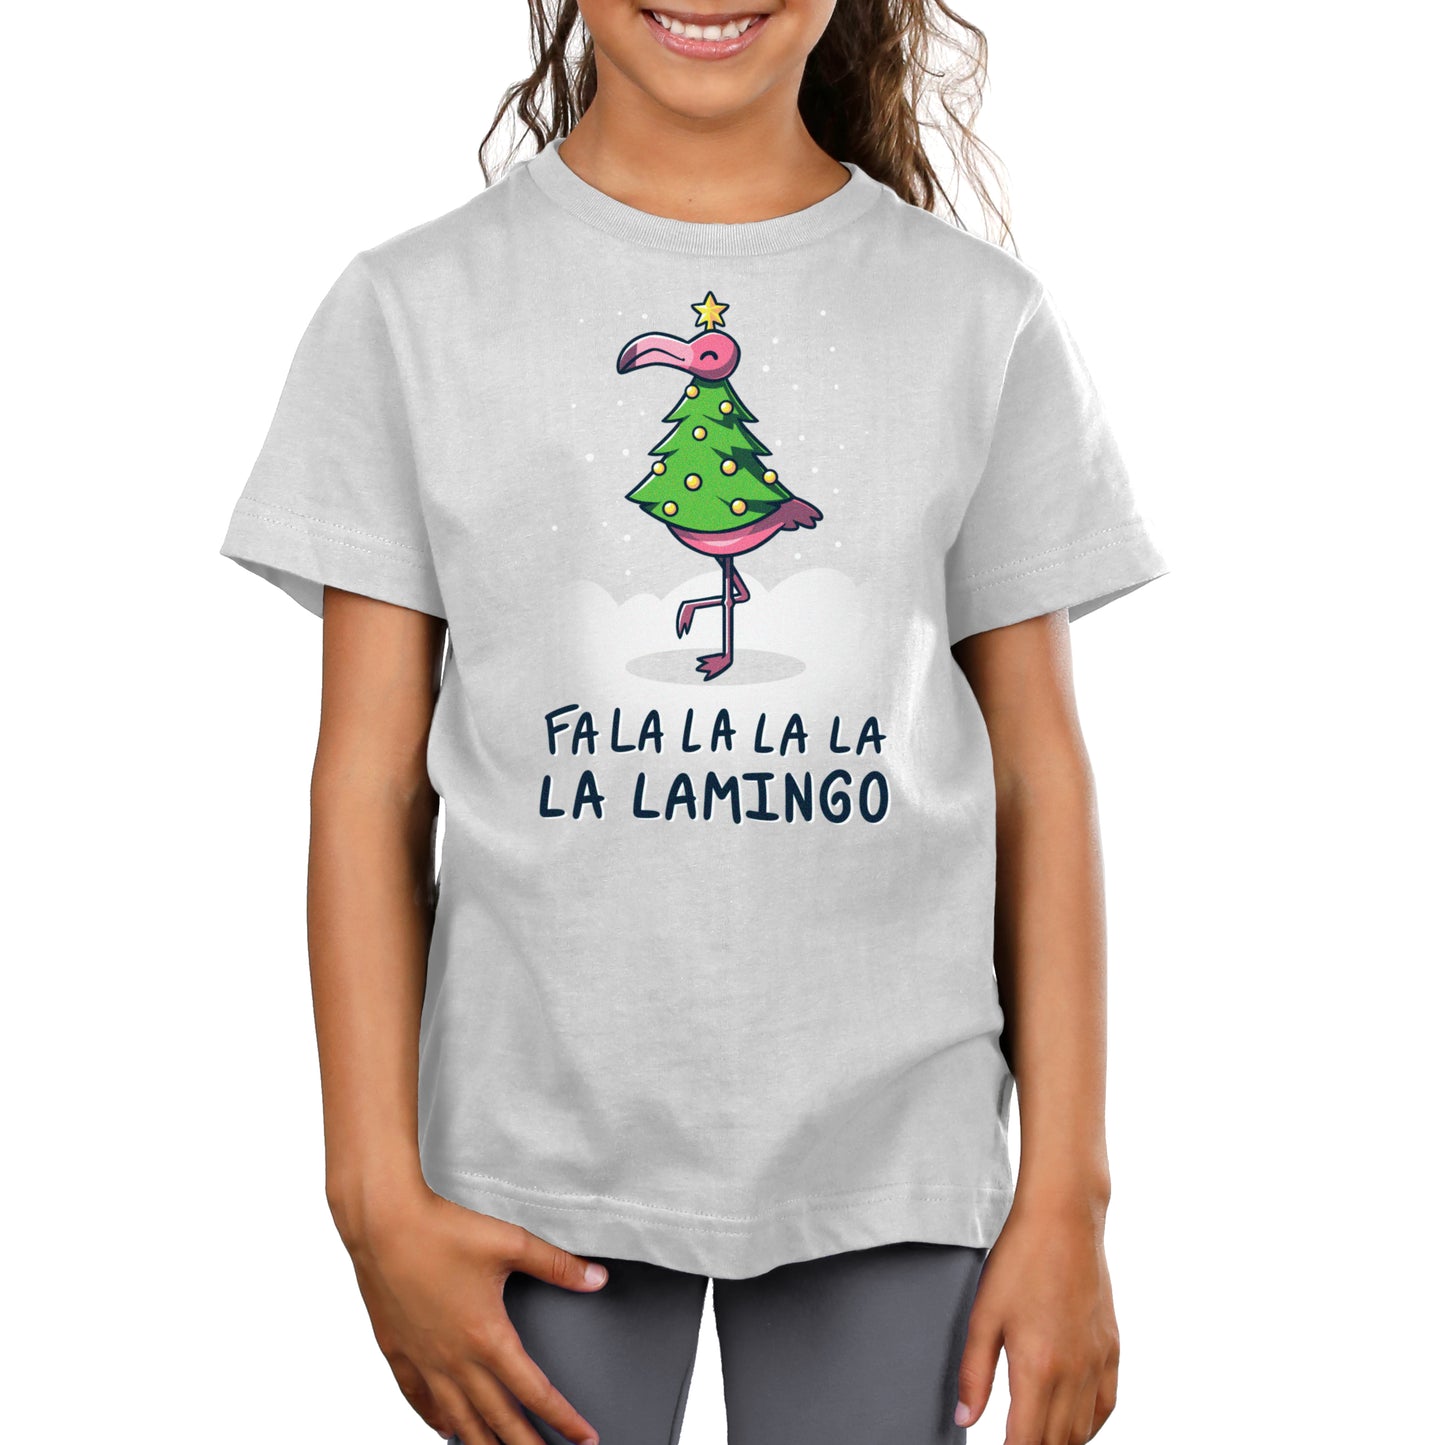 A girl wearing a silver Fa La La Lamingo T-shirt by TeeTurtle.